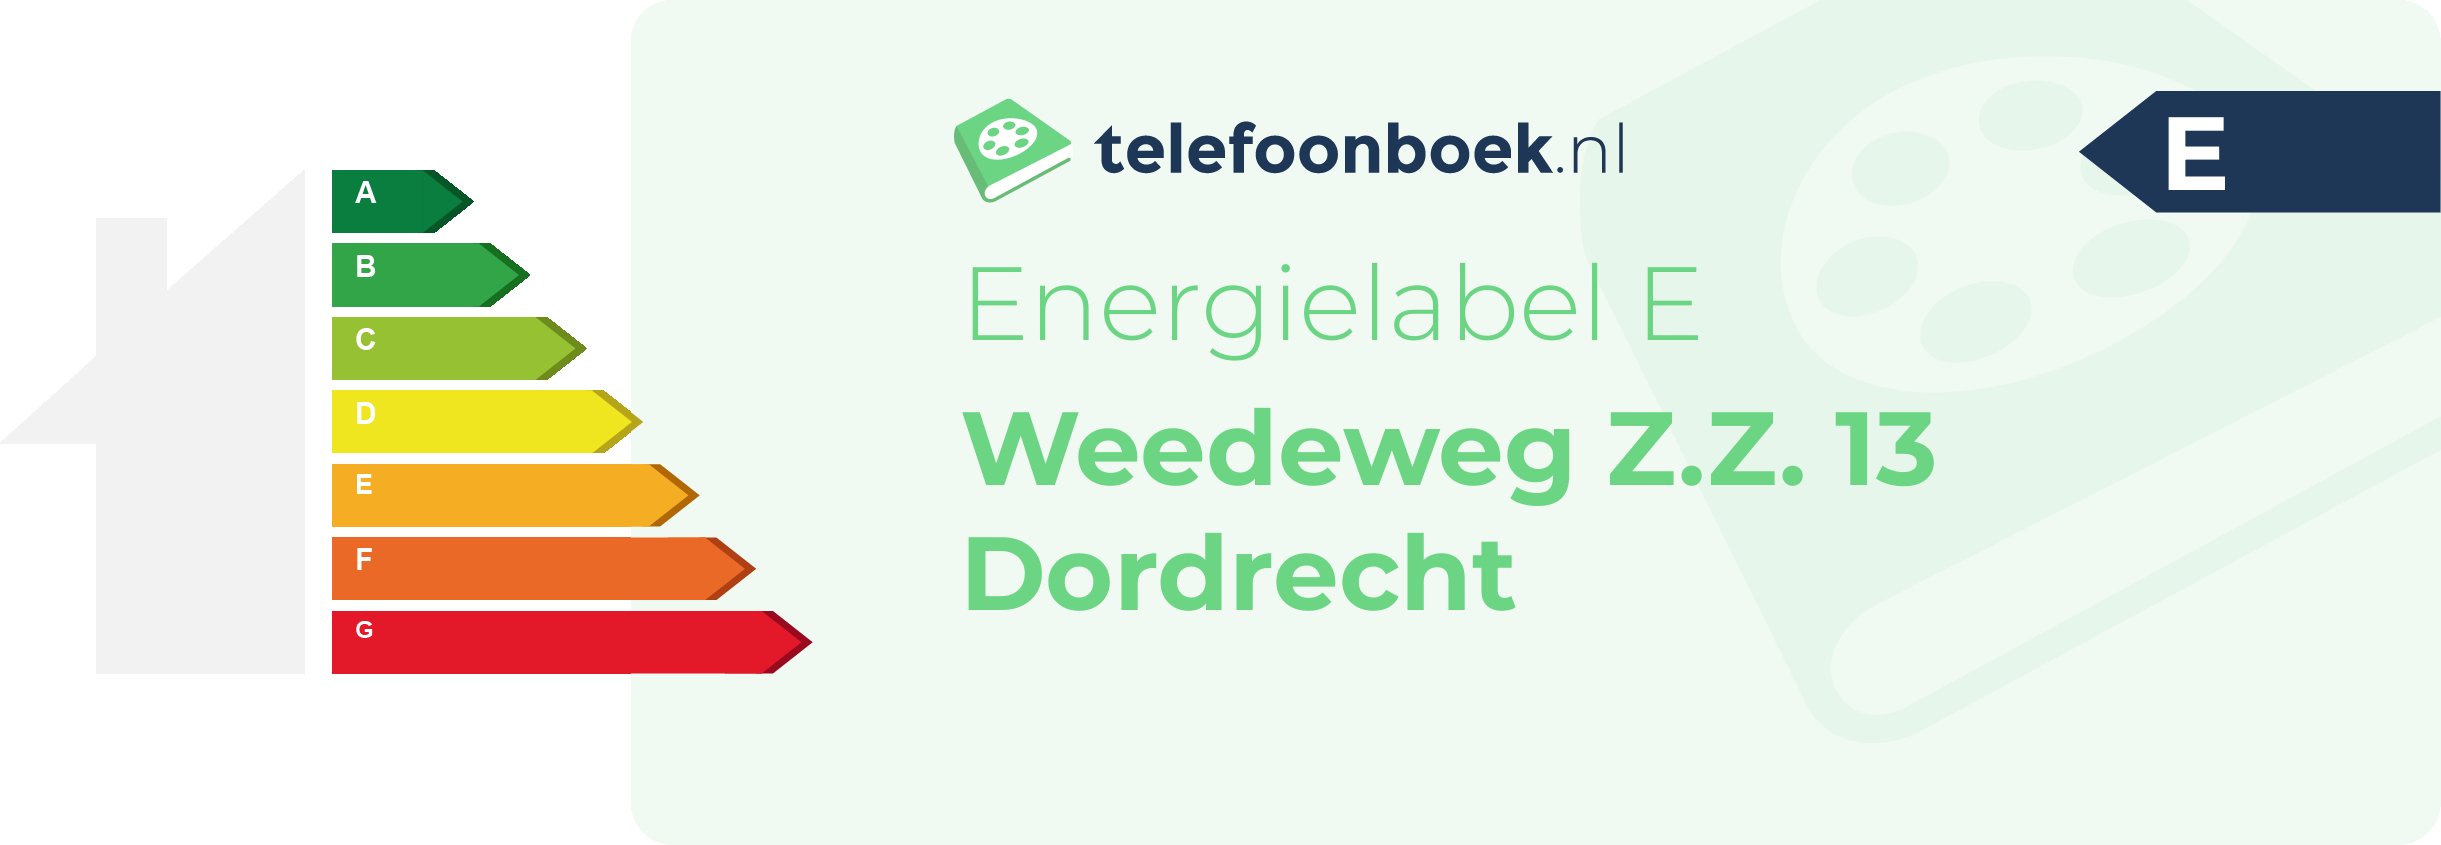 Energielabel Weedeweg Z.Z. 13 Dordrecht